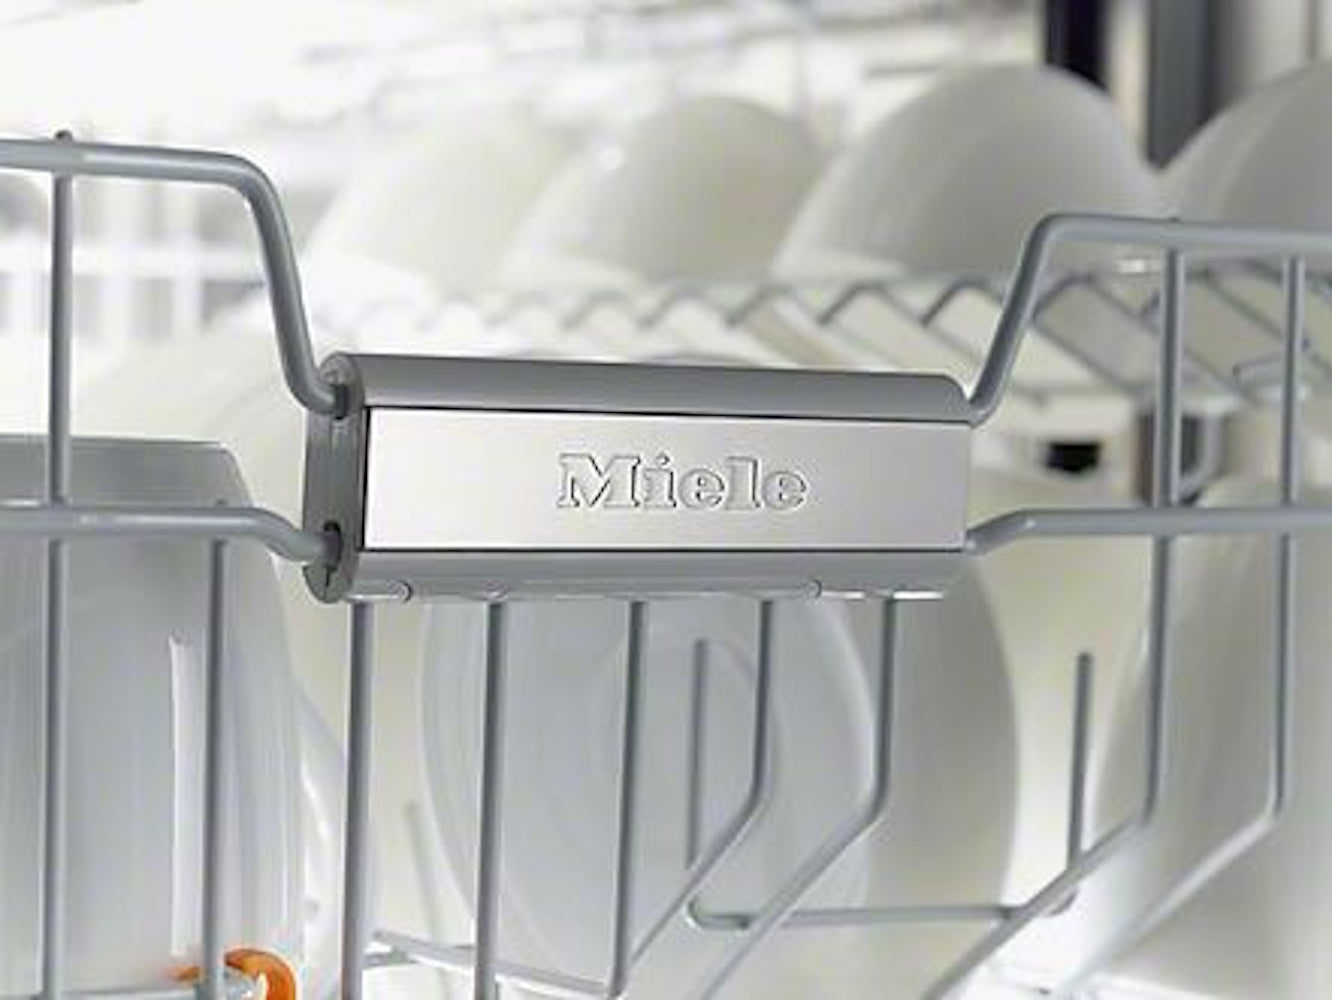 Miele - 16 dBA Built In Dishwasher in Panel Ready - G4998SCVI